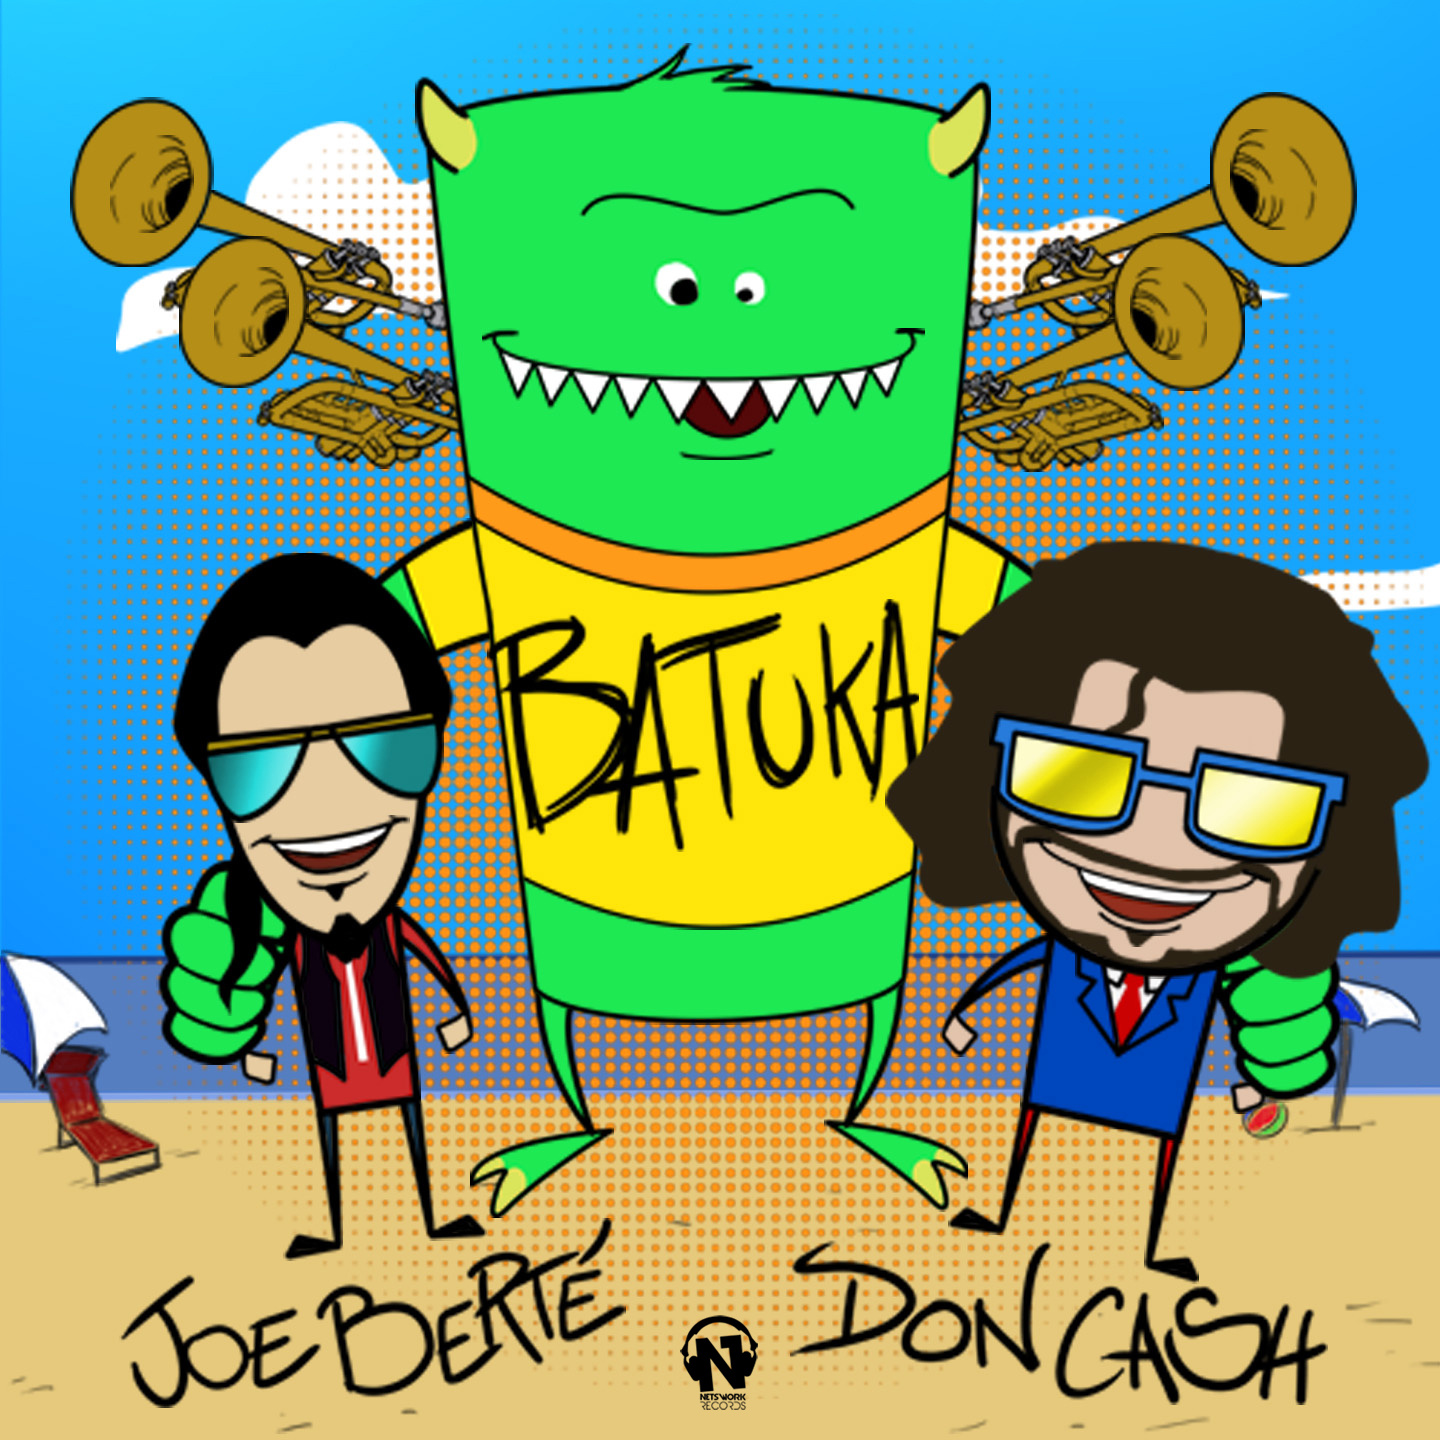 JOE BERTE’ & DON CASH “Batuka”